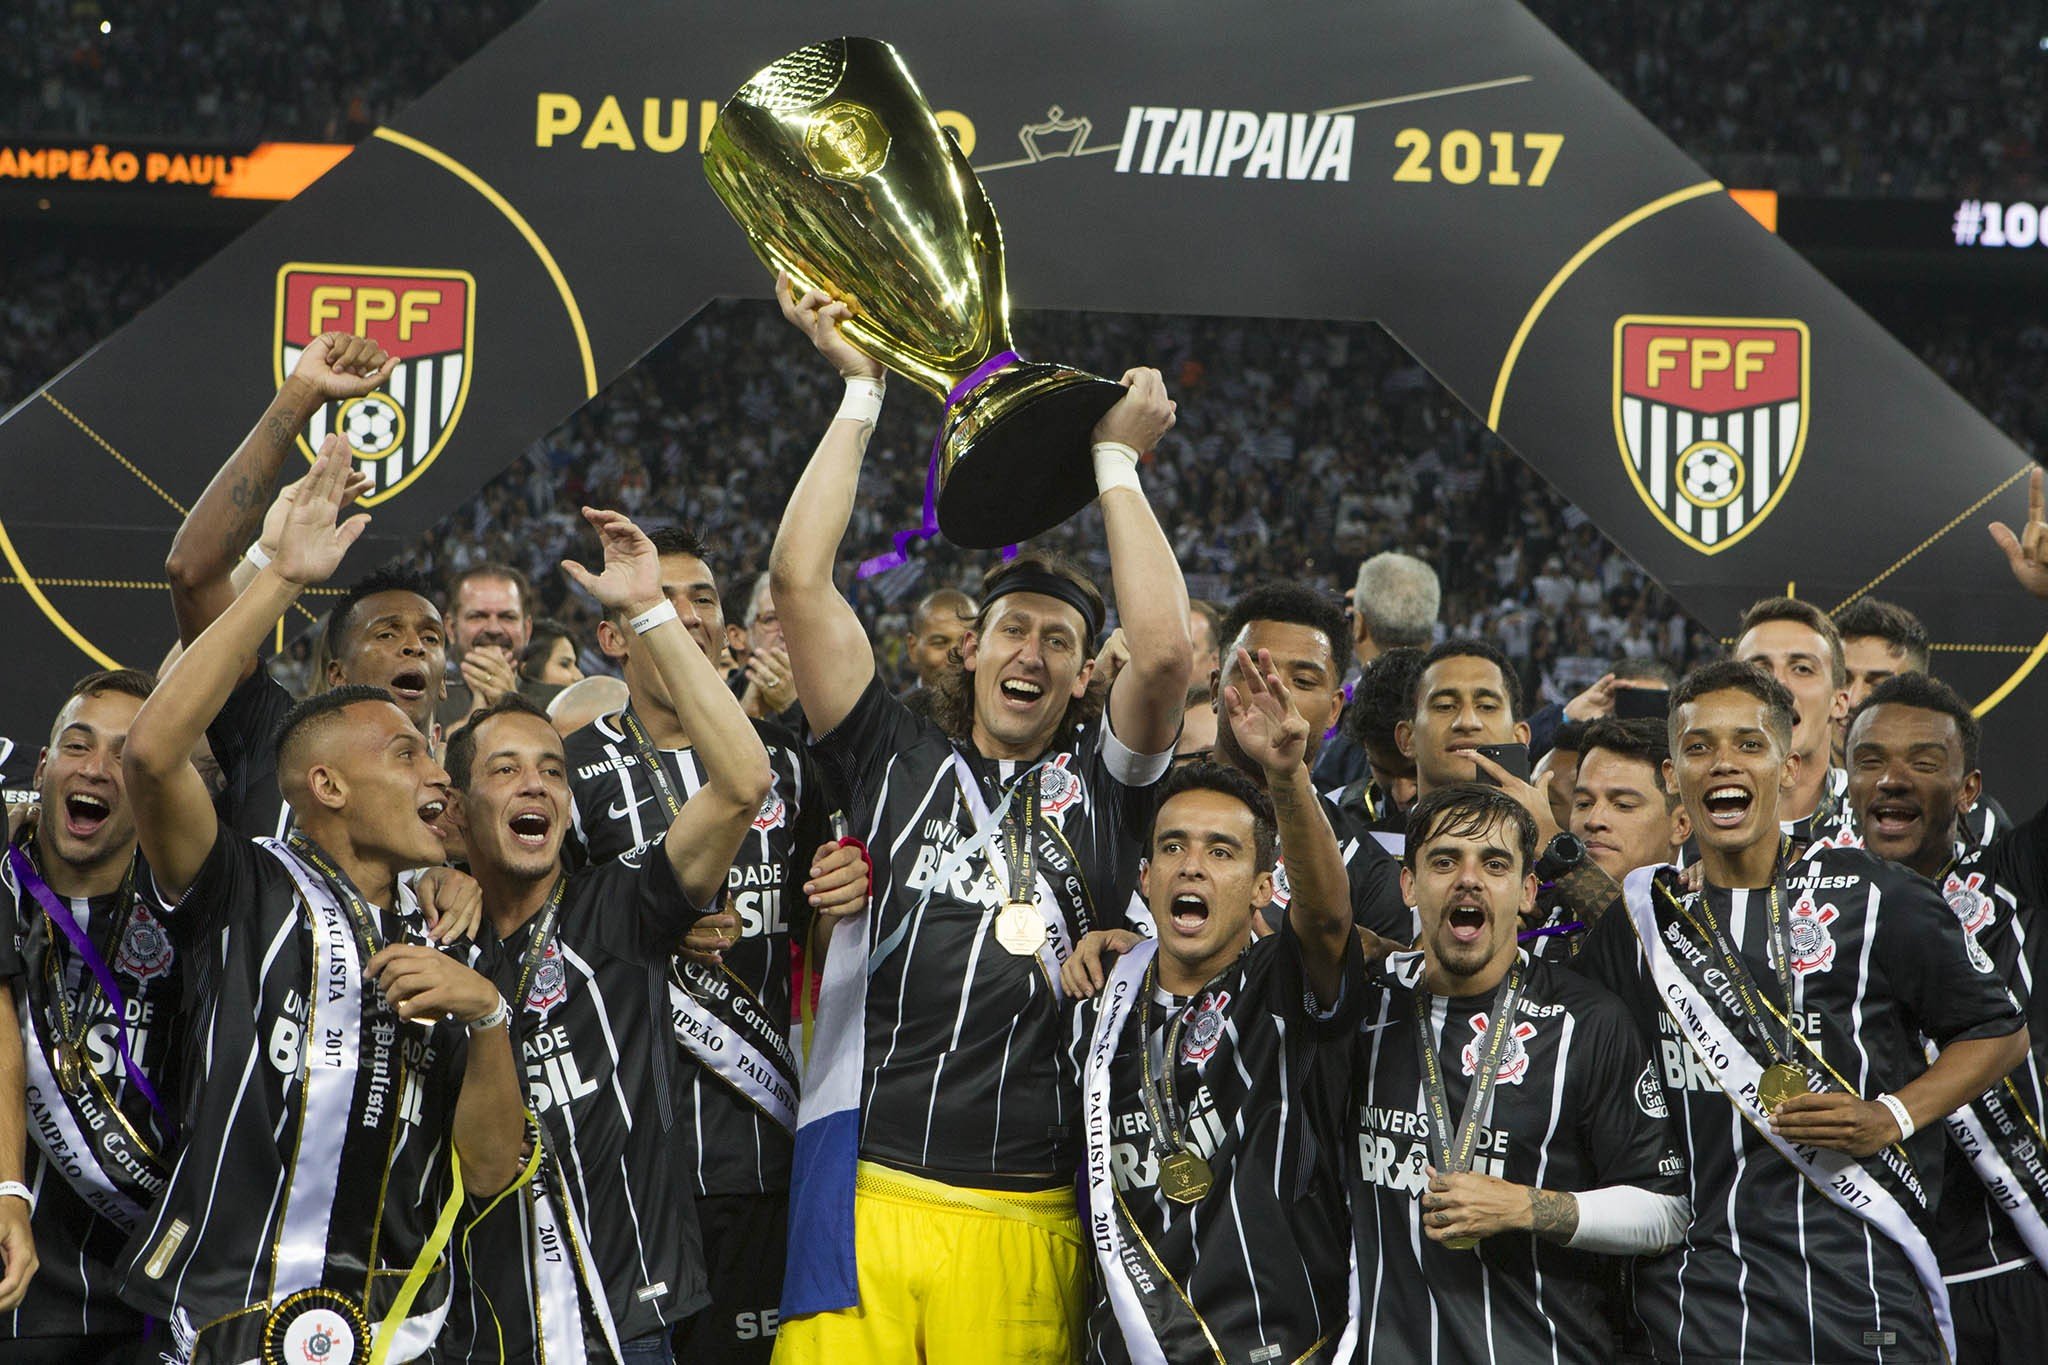 O Corinthians venceu cinco títulos na sua Arena desde a inauguração: Brasileiro 2015, Paulistão 2017, Brasileirão 2017, Paulistão 2018 e Paulistão 2019.